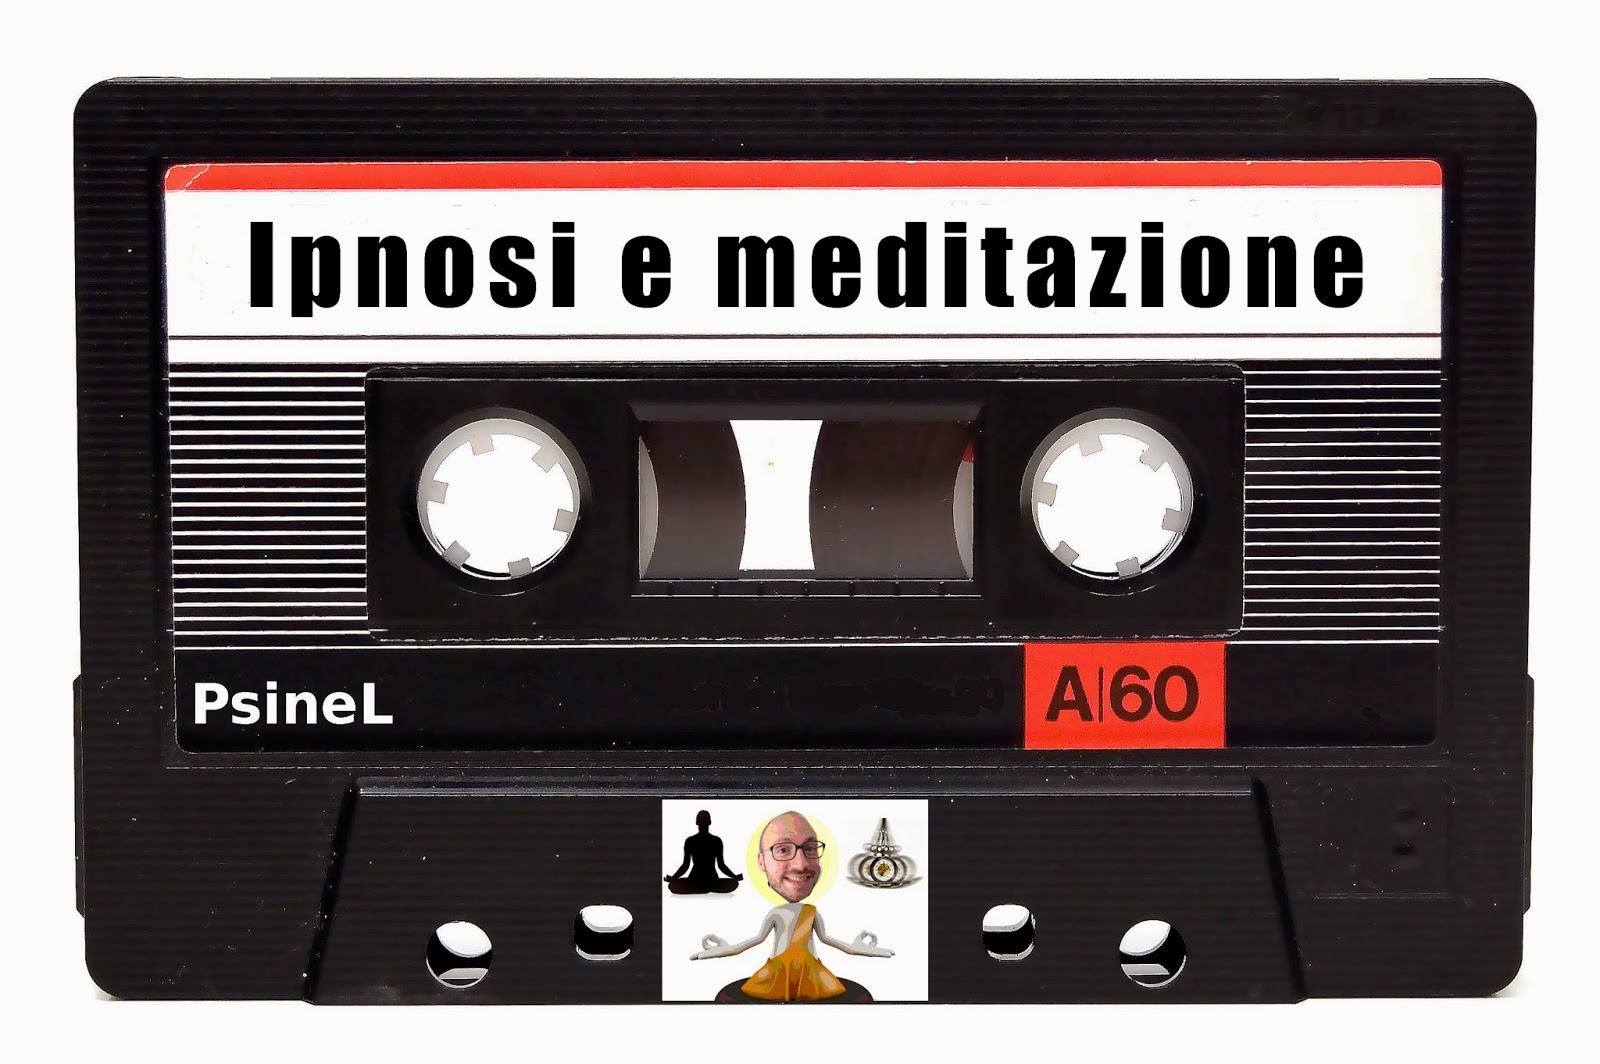 Ipnosi e Meditazione: La mente deve vagare oppure no?